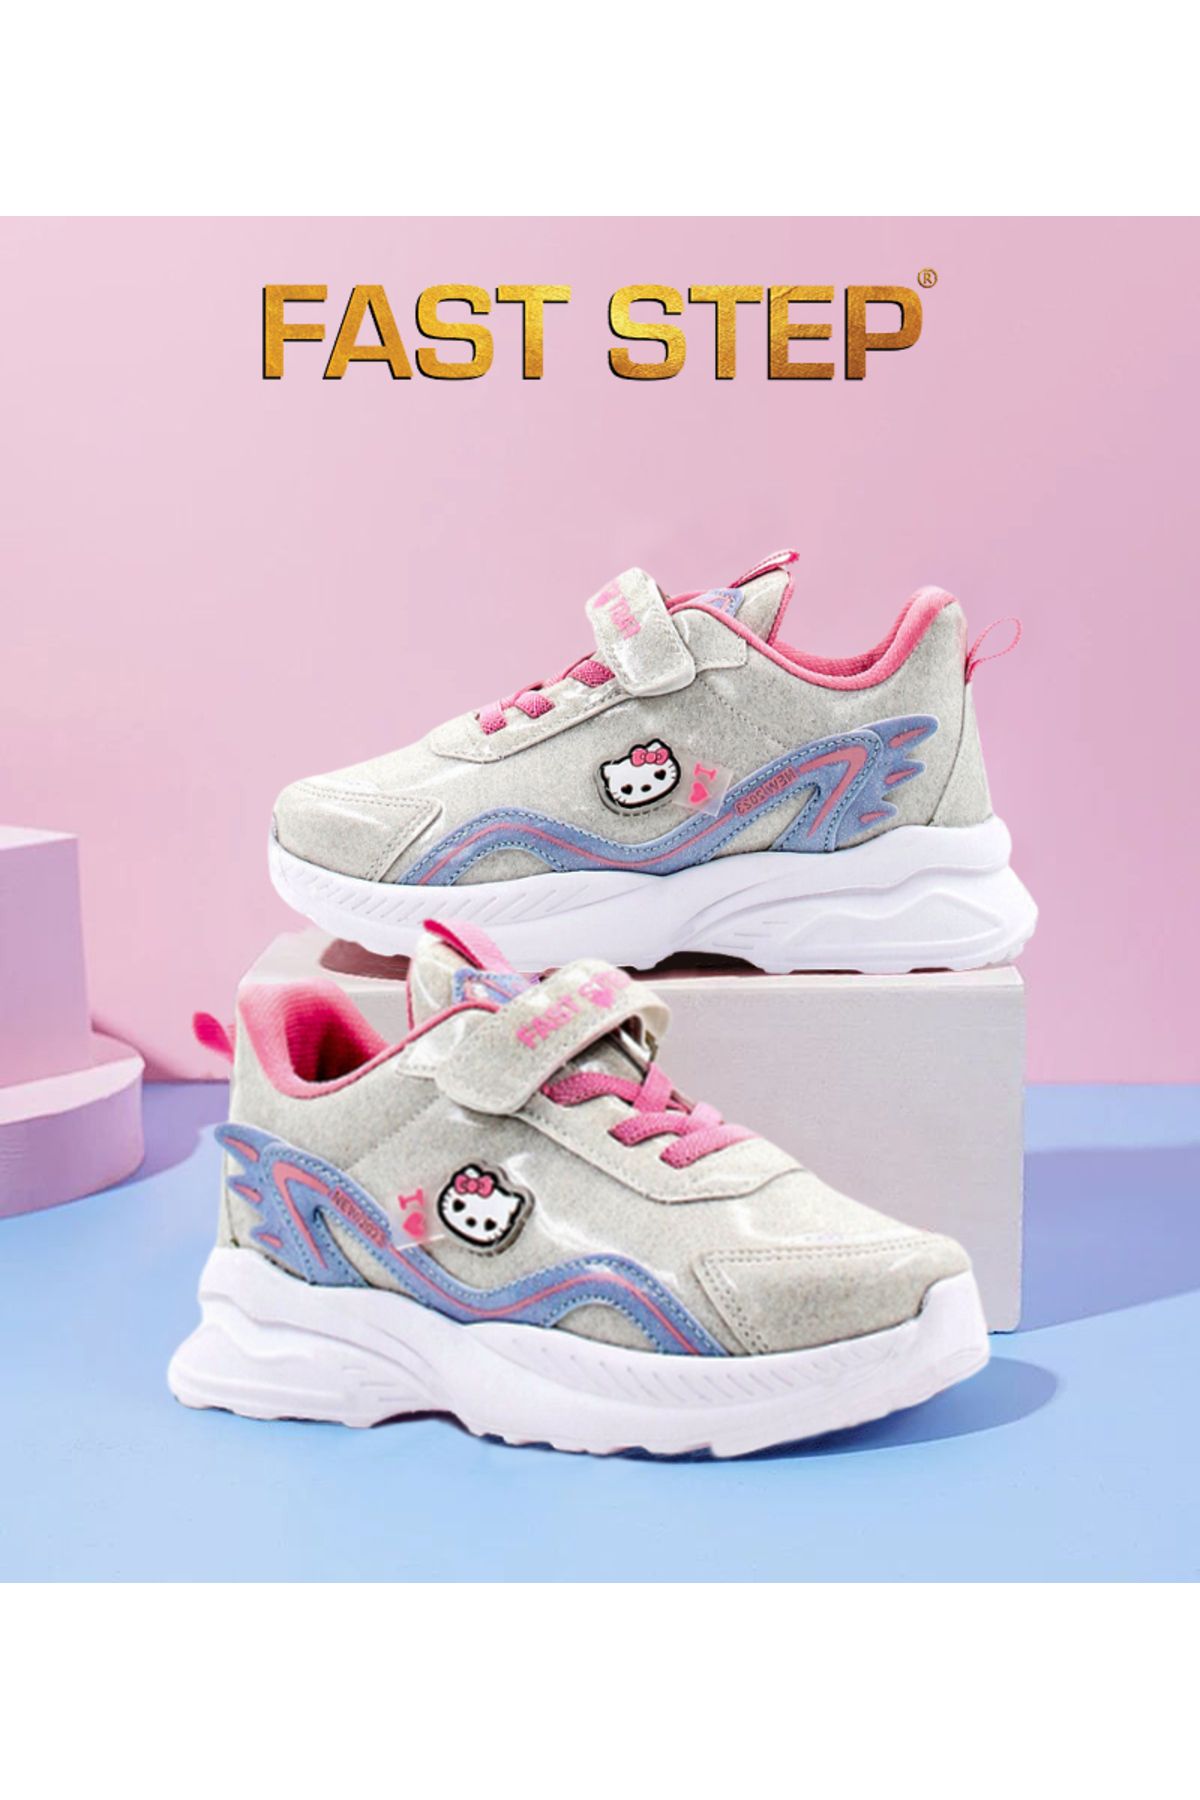 Fast Step Unisex Spor Rahat Taban Hafif Sneaker Cırt Cırtlı Yazlık Çocuk Ayakkabı 615xca1907